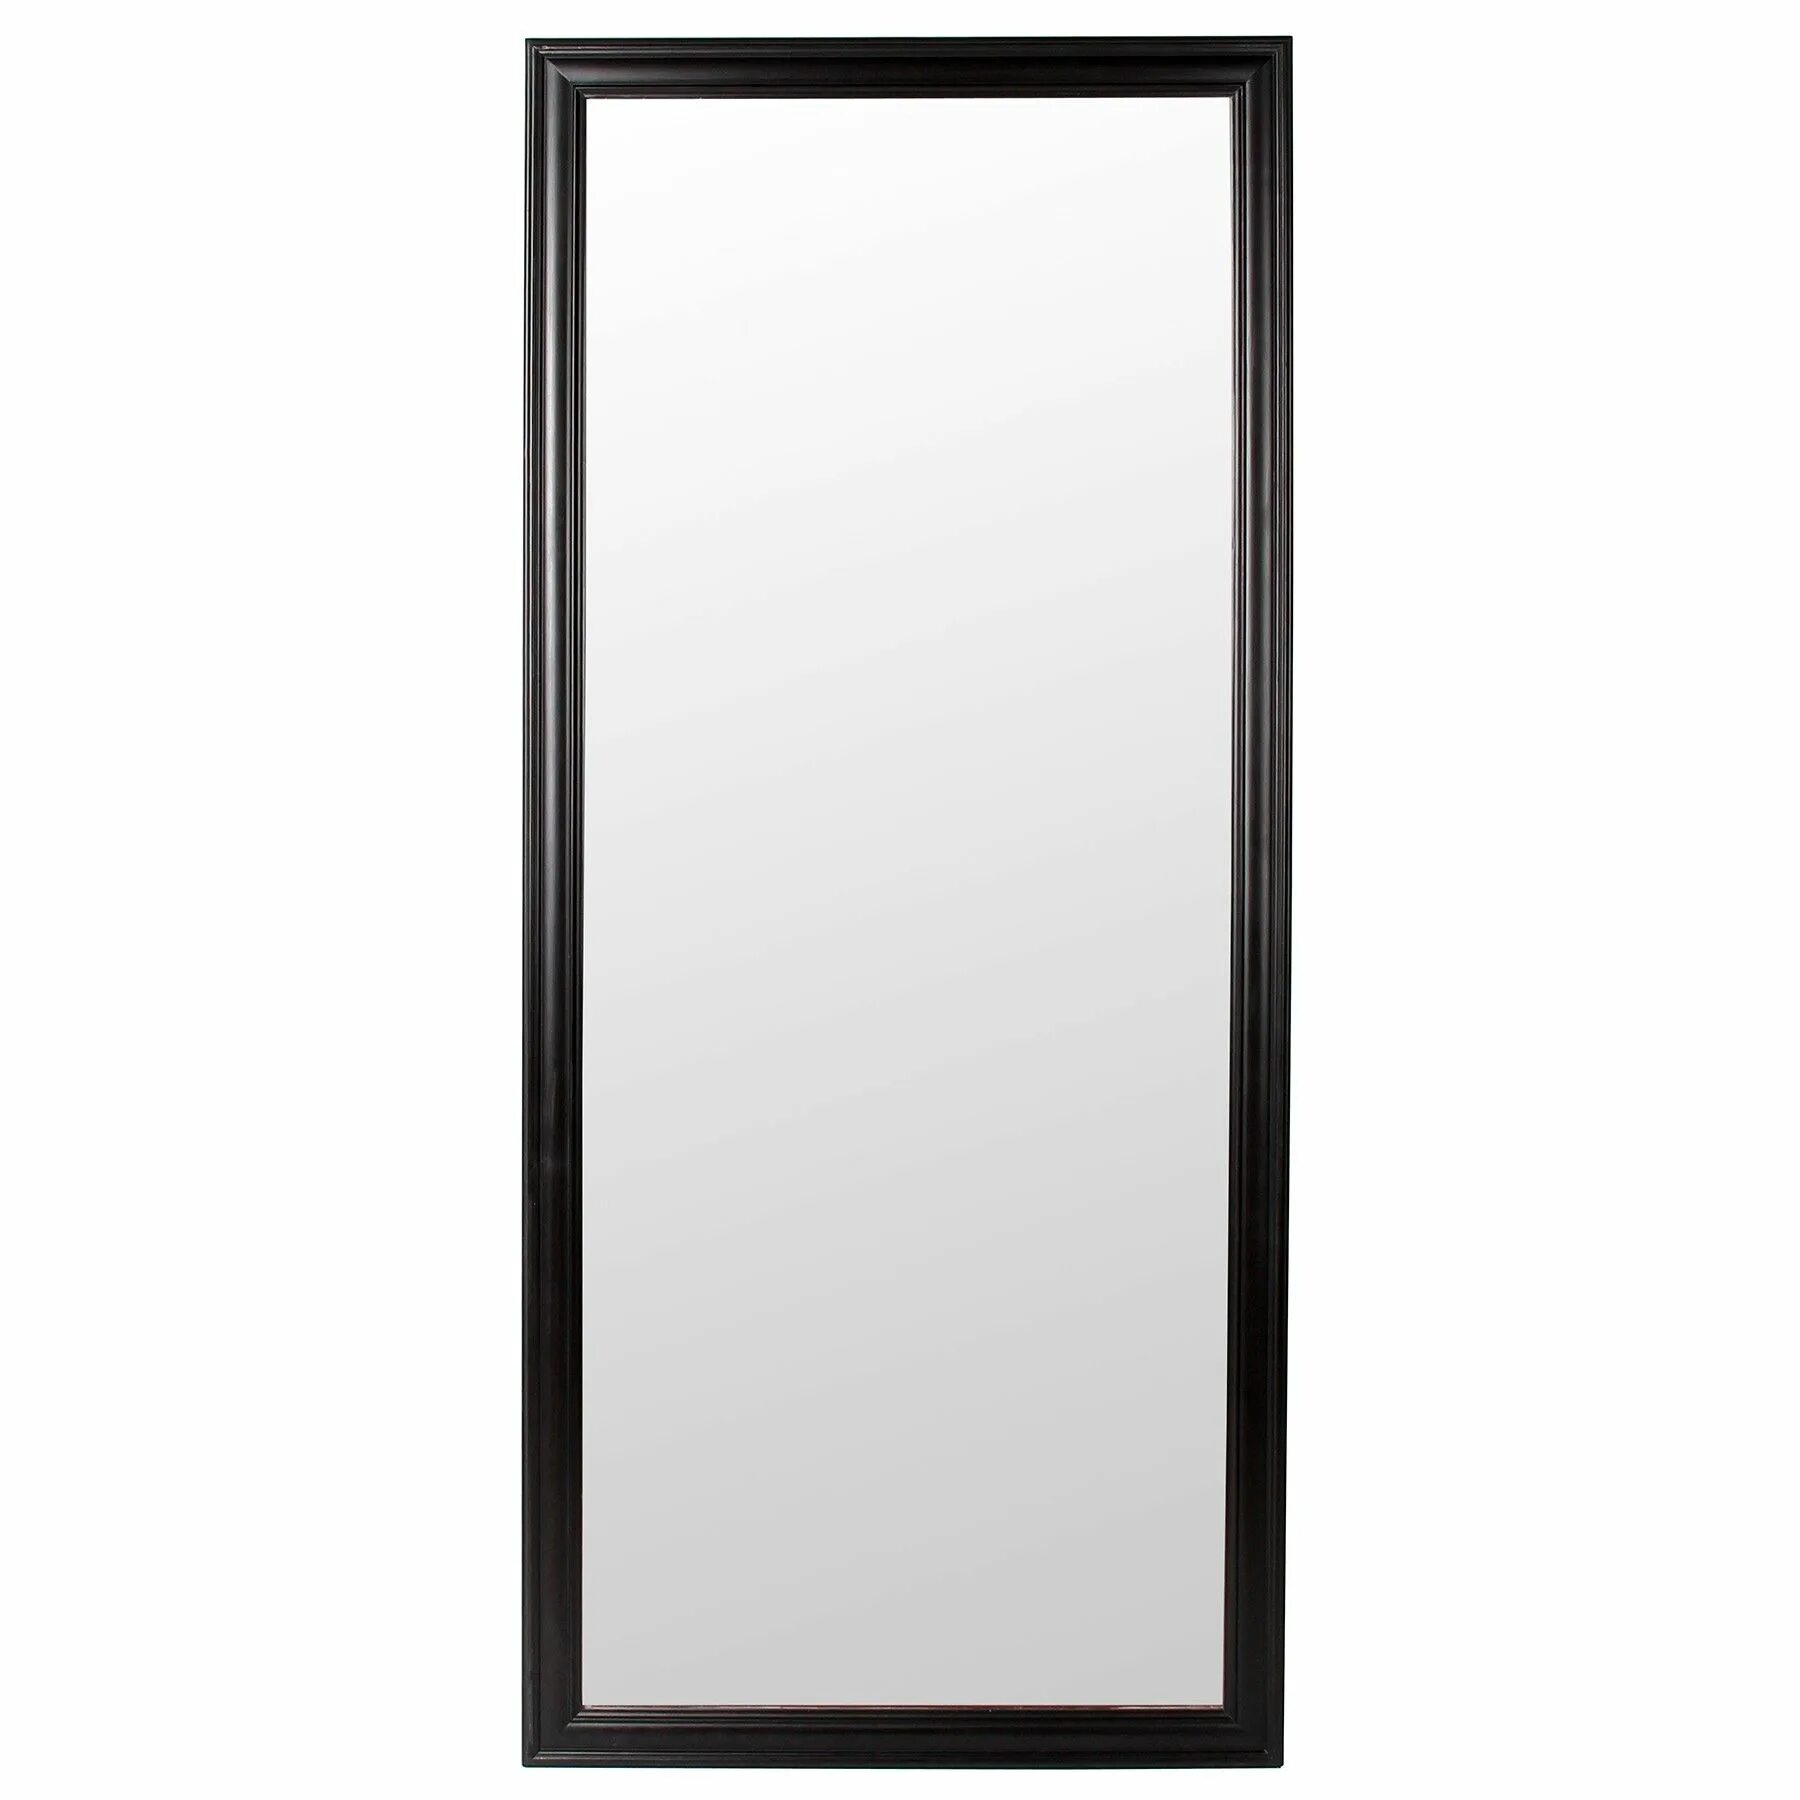 Купить зеркало настенное недорого. Зеркало 121б металлик 600*1200. Зеркало прямоугольное в черной раме. Зеркало прямоугольное настенное. Зеркало прямоугольное в раме.